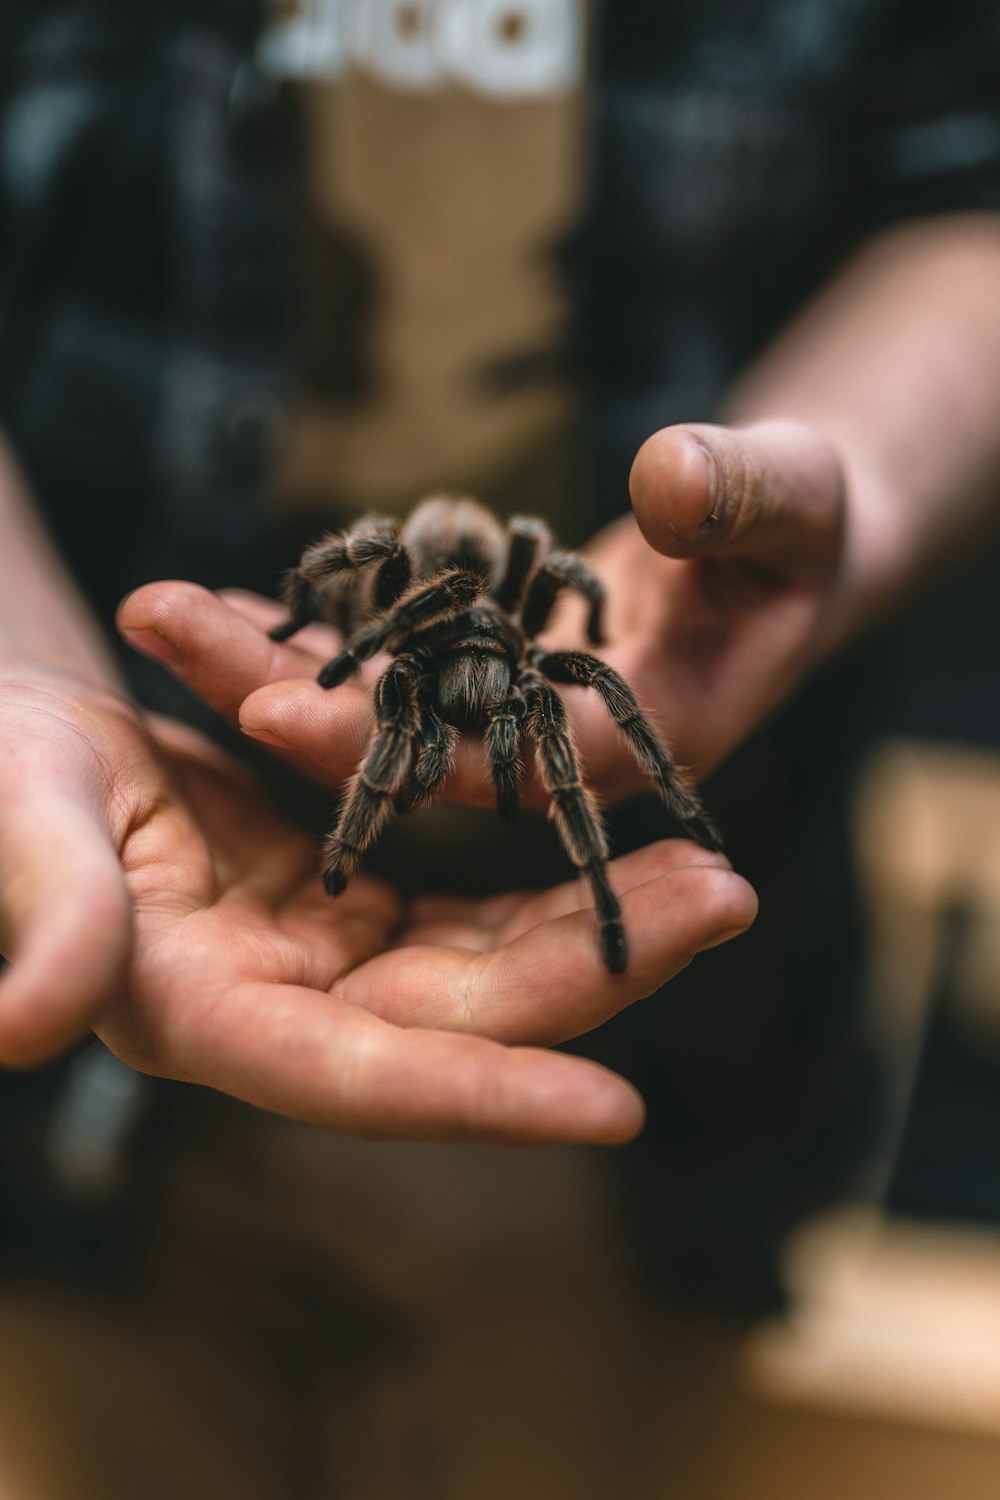 Una persona sosteniendo una araña en sus manos